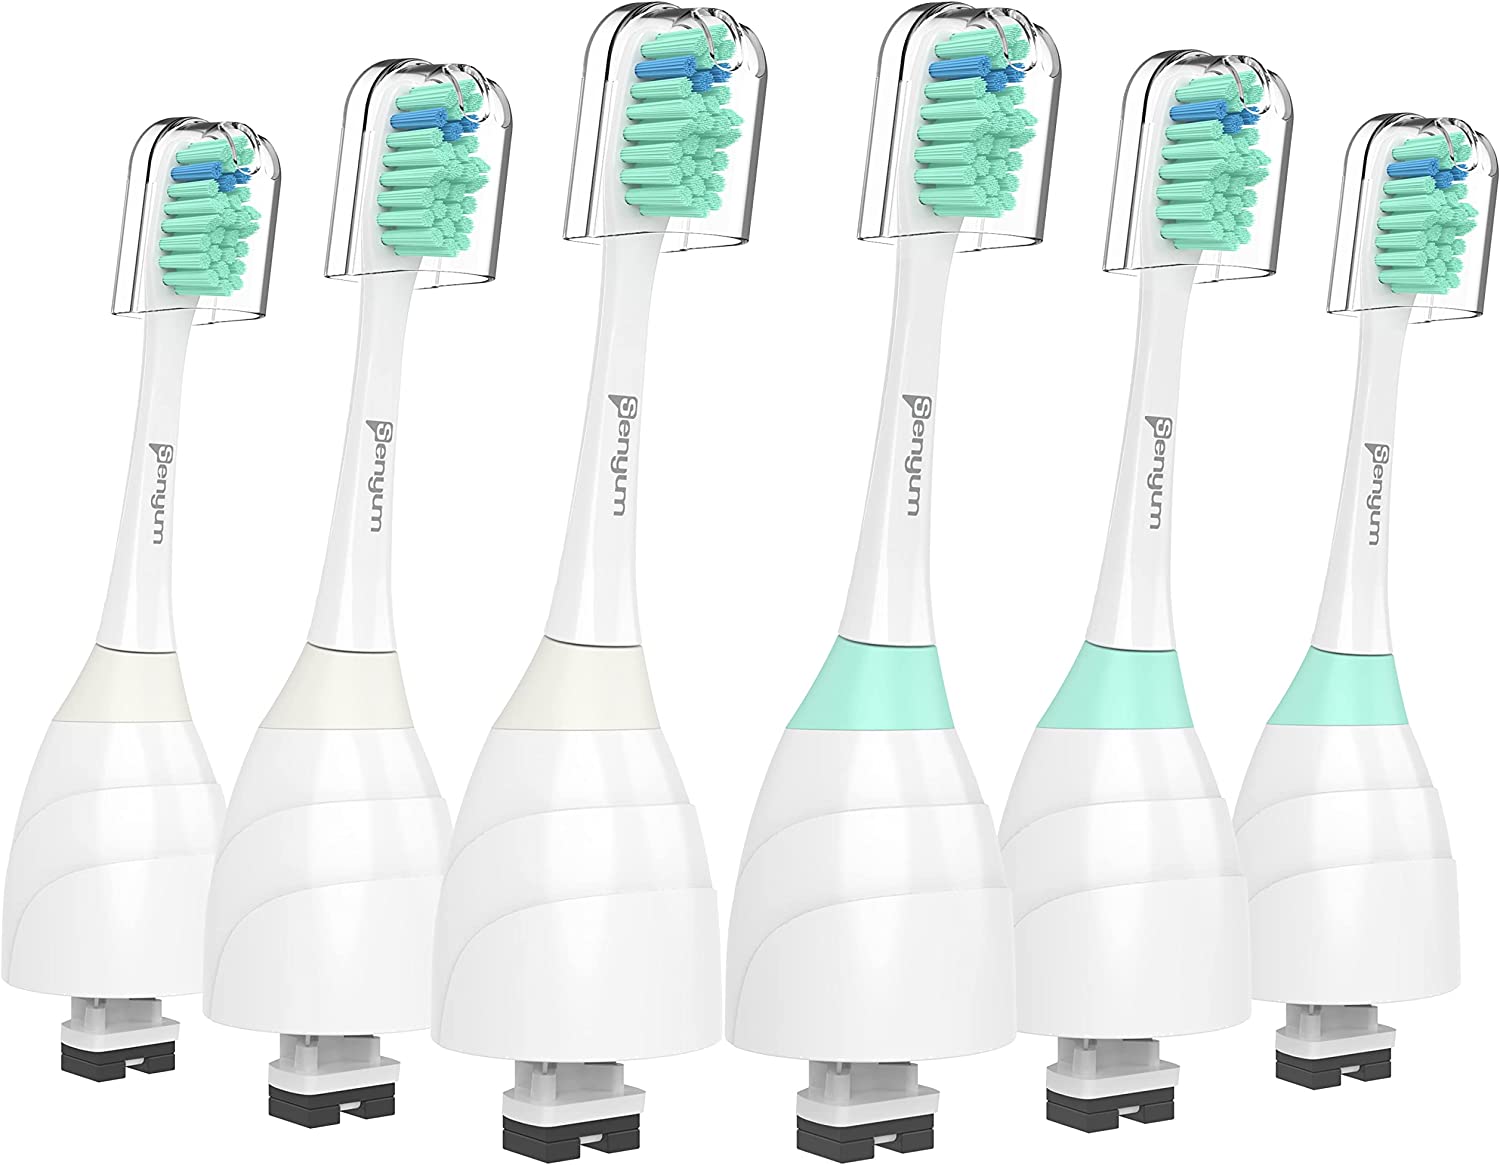 【10%點數回饋】【美國代購】Philips Sonicare相容的替換牙刷頭：適合 Sonicare e系列 CleanCare和Xtreme 電動刷柄 6件